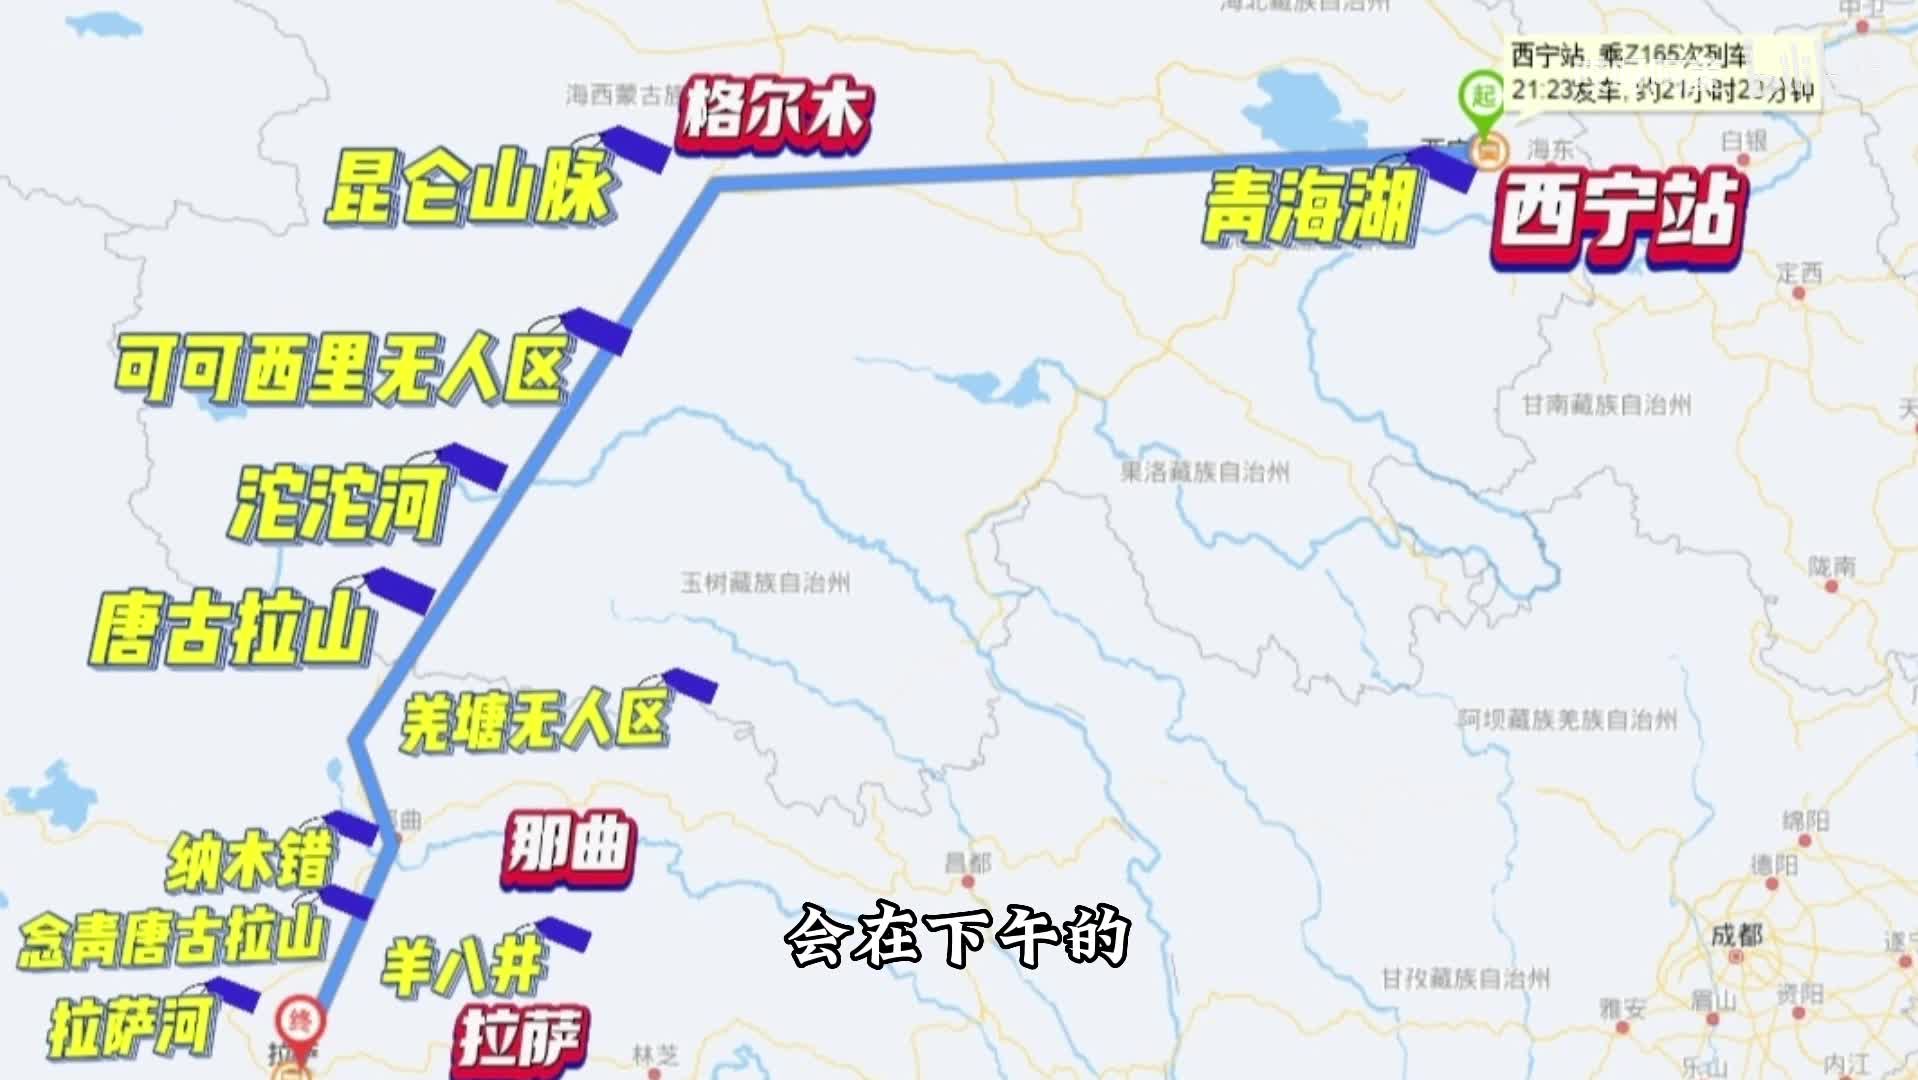 坐上火车去拉萨-搜狐大视野-搜狐新闻